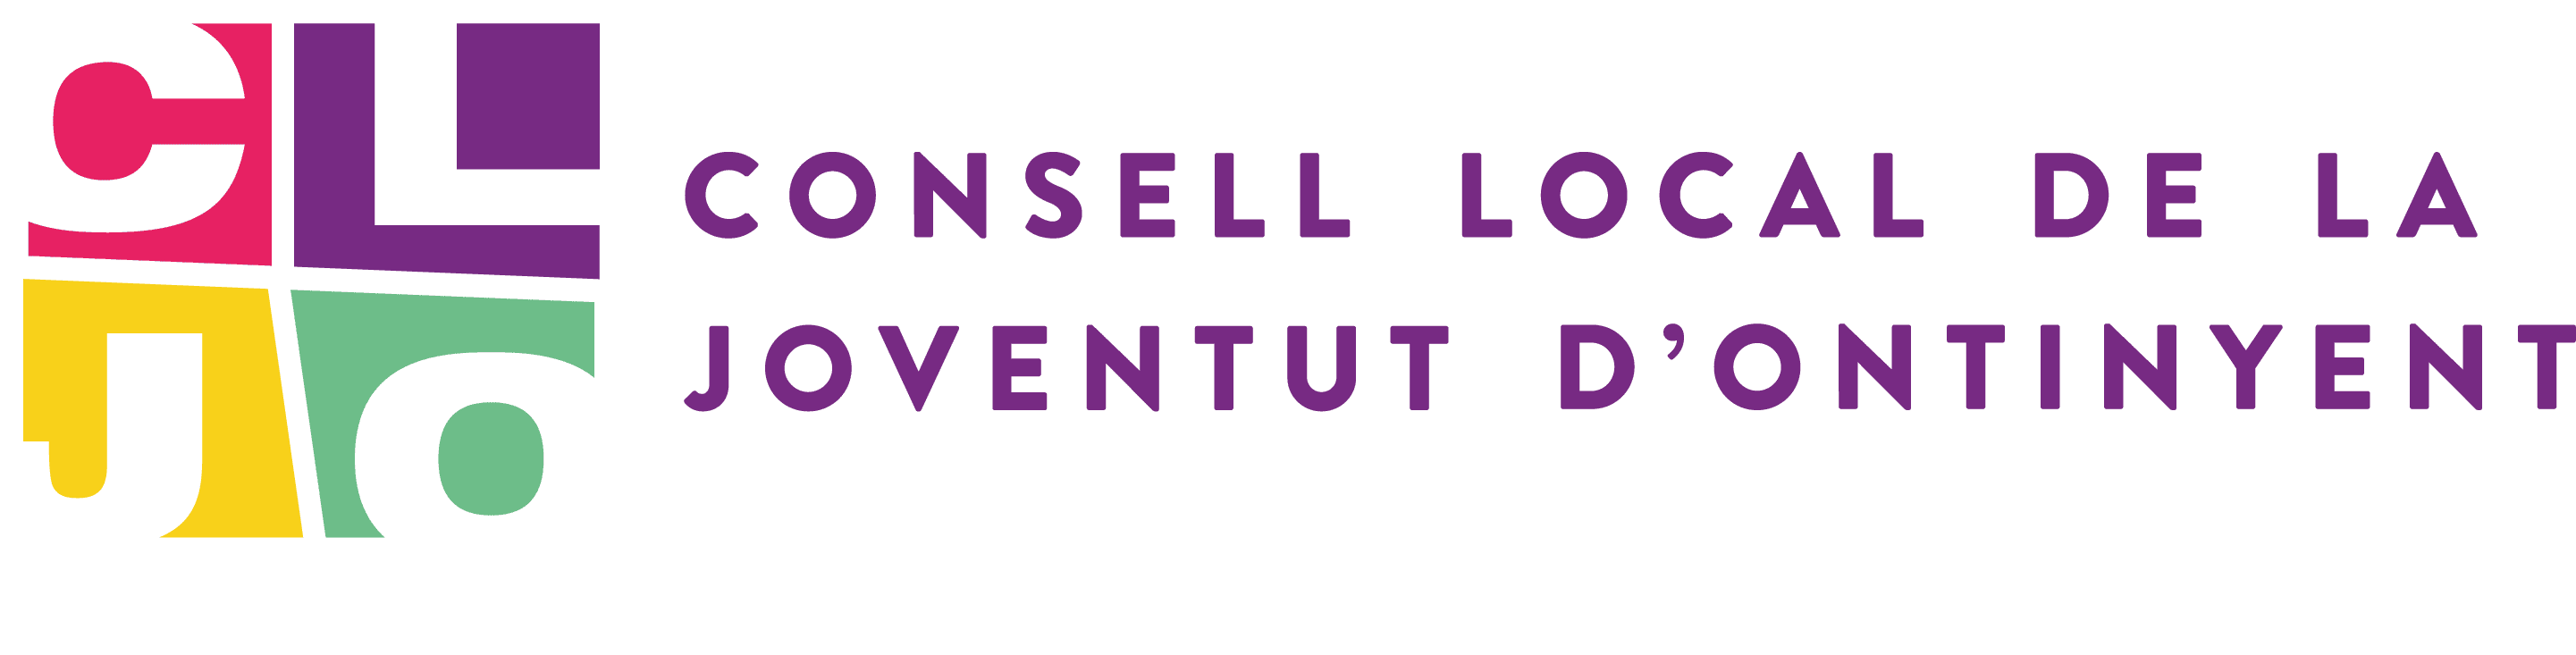 Logotip Consell Local de la Joventut d'Ontinyent